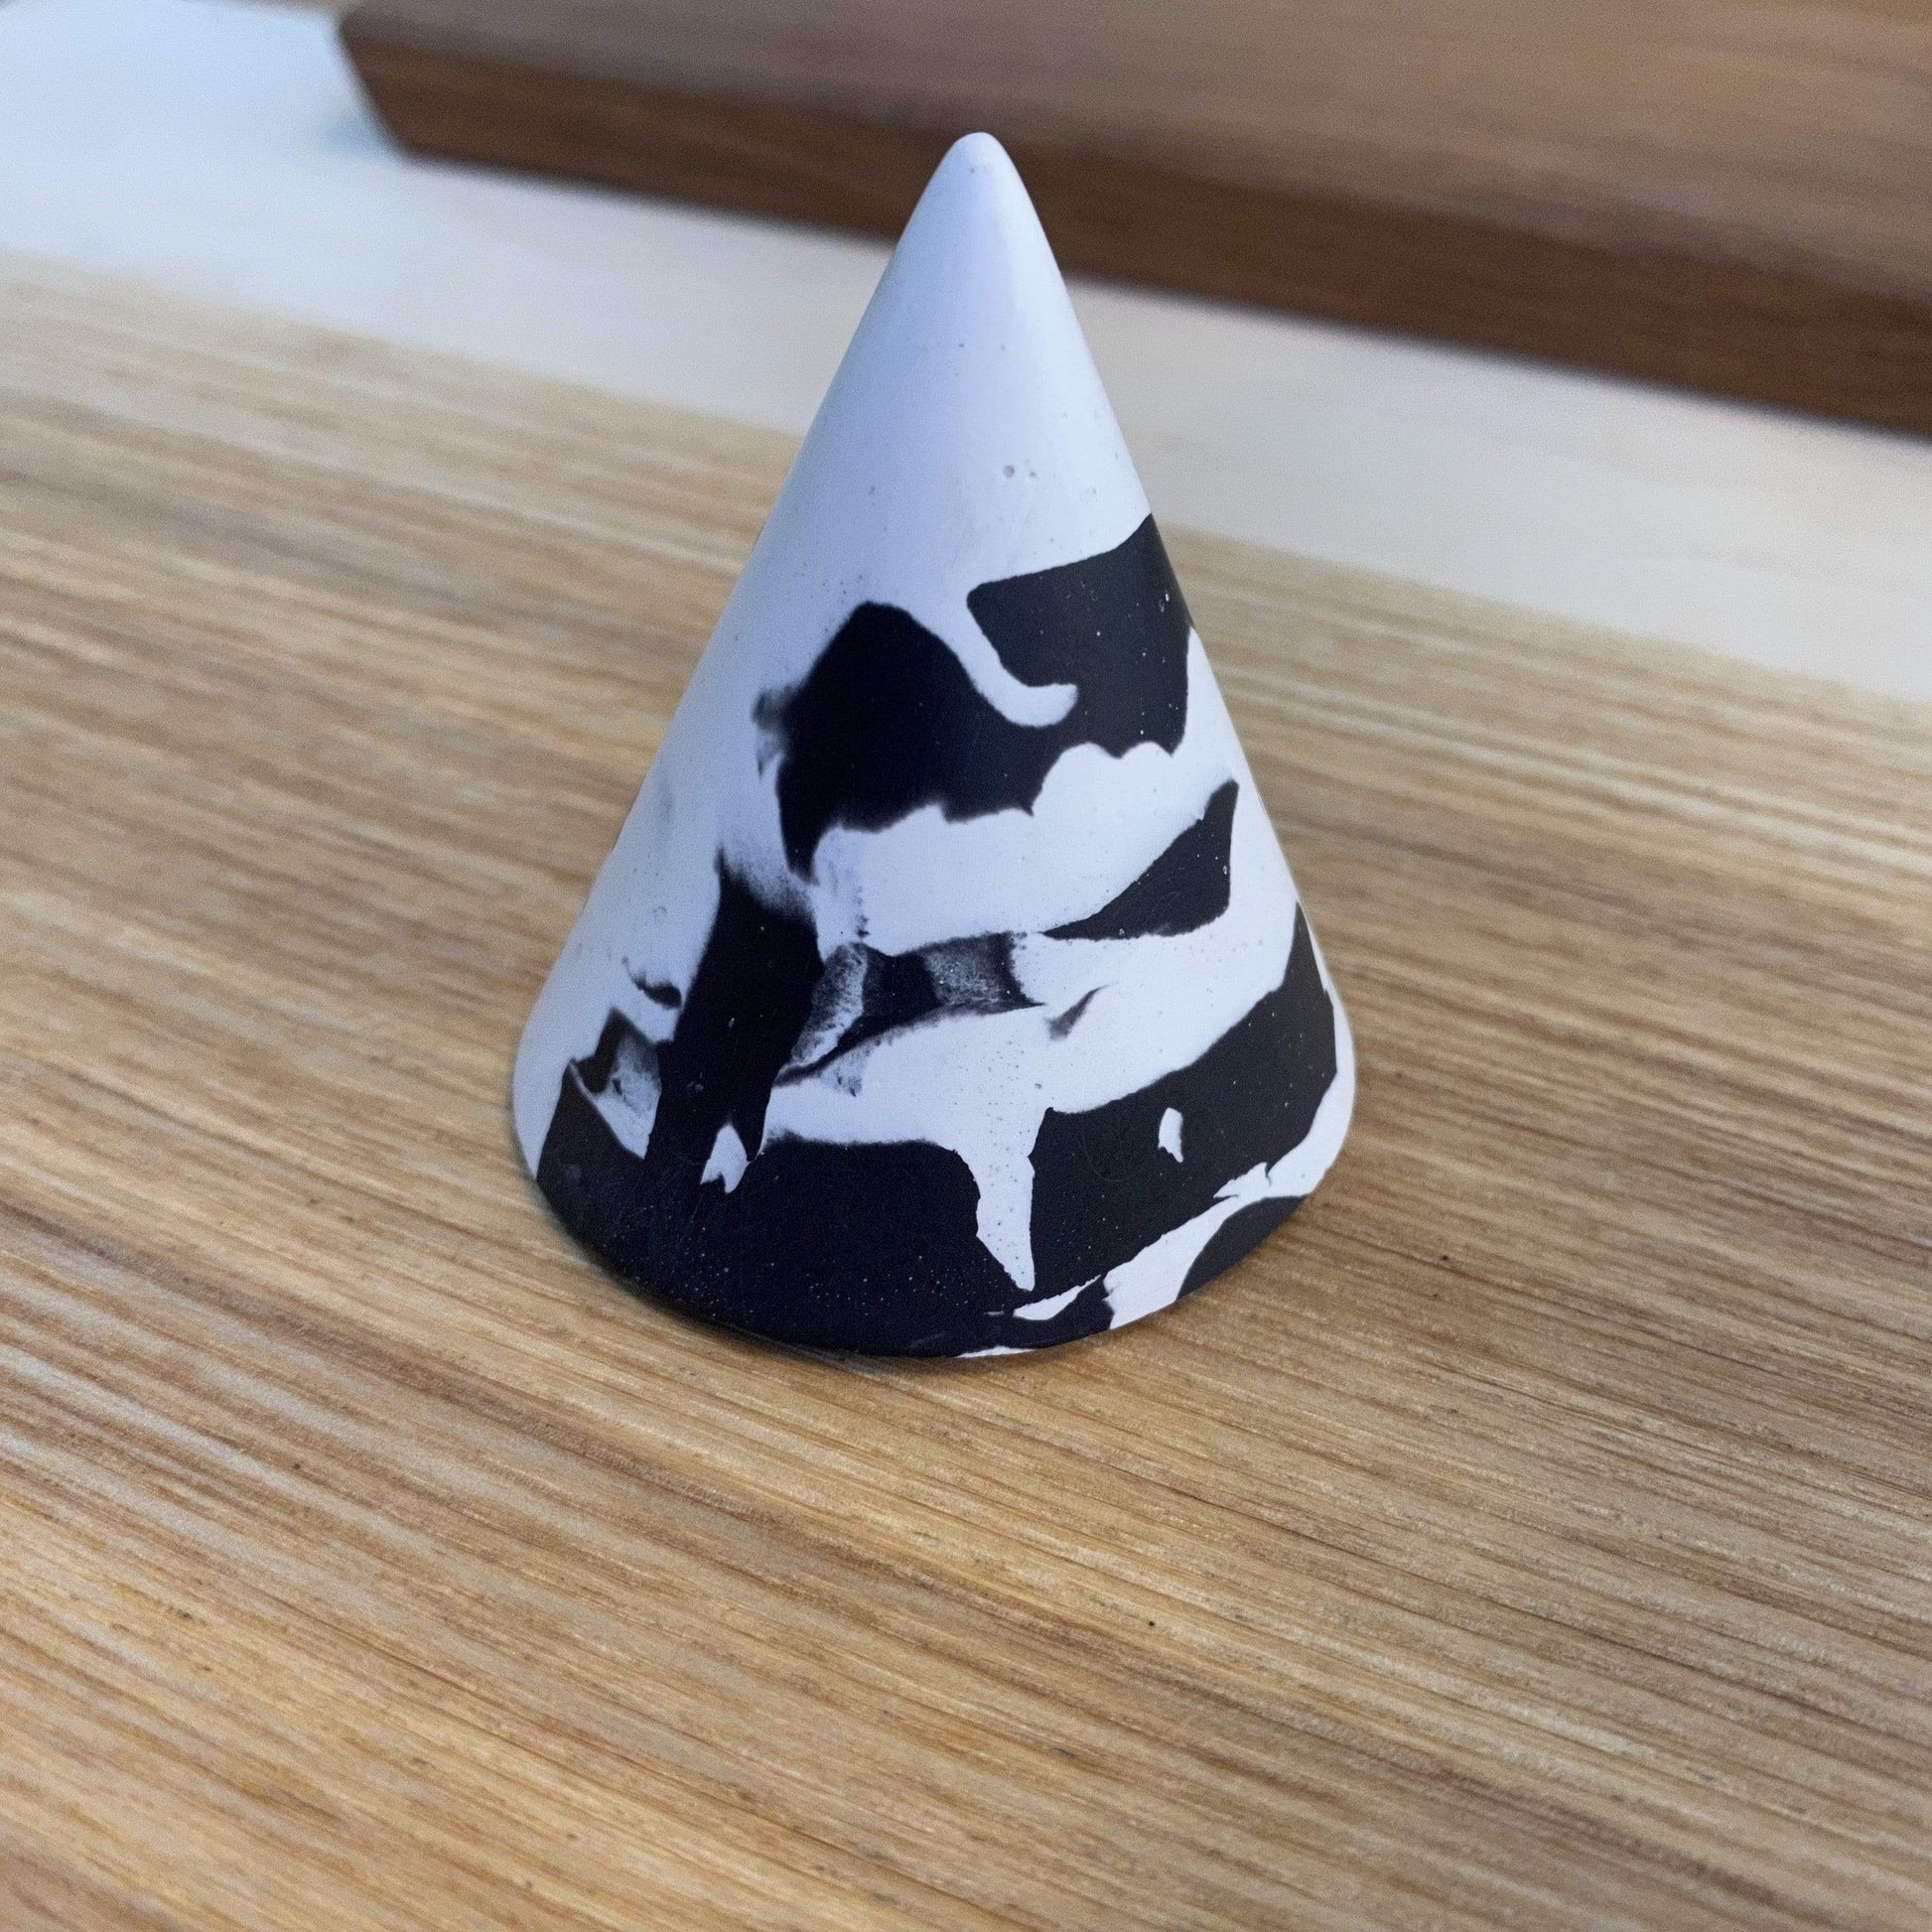 Tip Studio Cones Small - Black/White Jesmonite Cones  (various sizes and patterns)